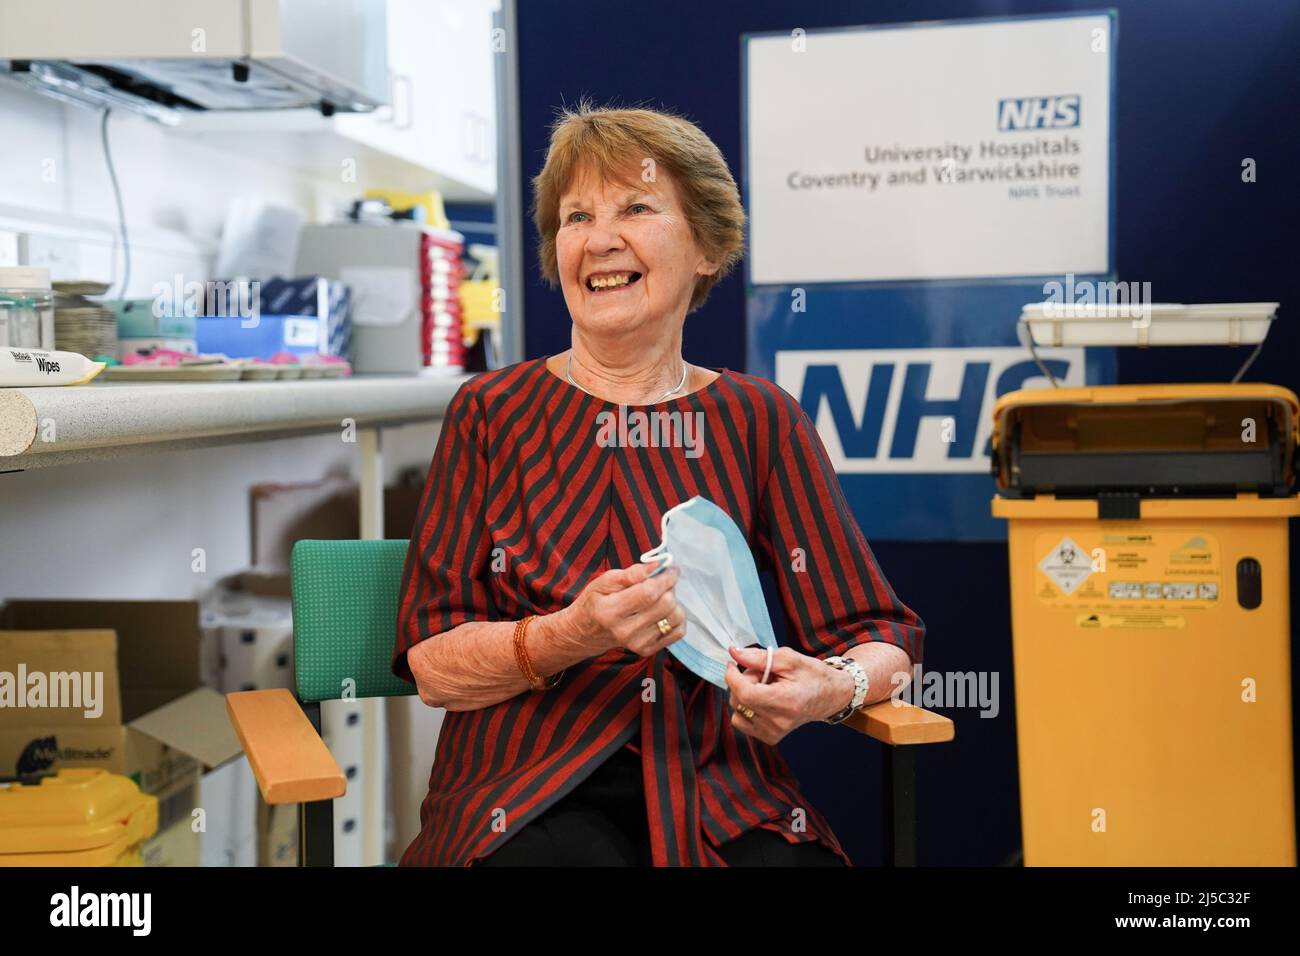 Margaret Keenan, 91 ans, arrive pour recevoir sa balle de rappel Covid-19 de printemps à l'hôpital universitaire de Coventry. Mme Keenan, connue sous le nom de Maggie, a été la première patiente du Royaume-Uni à recevoir le vaccin Pfizer/BioNtech Covid-19. Date de la photo: Vendredi 22 avril 2022. Banque D'Images